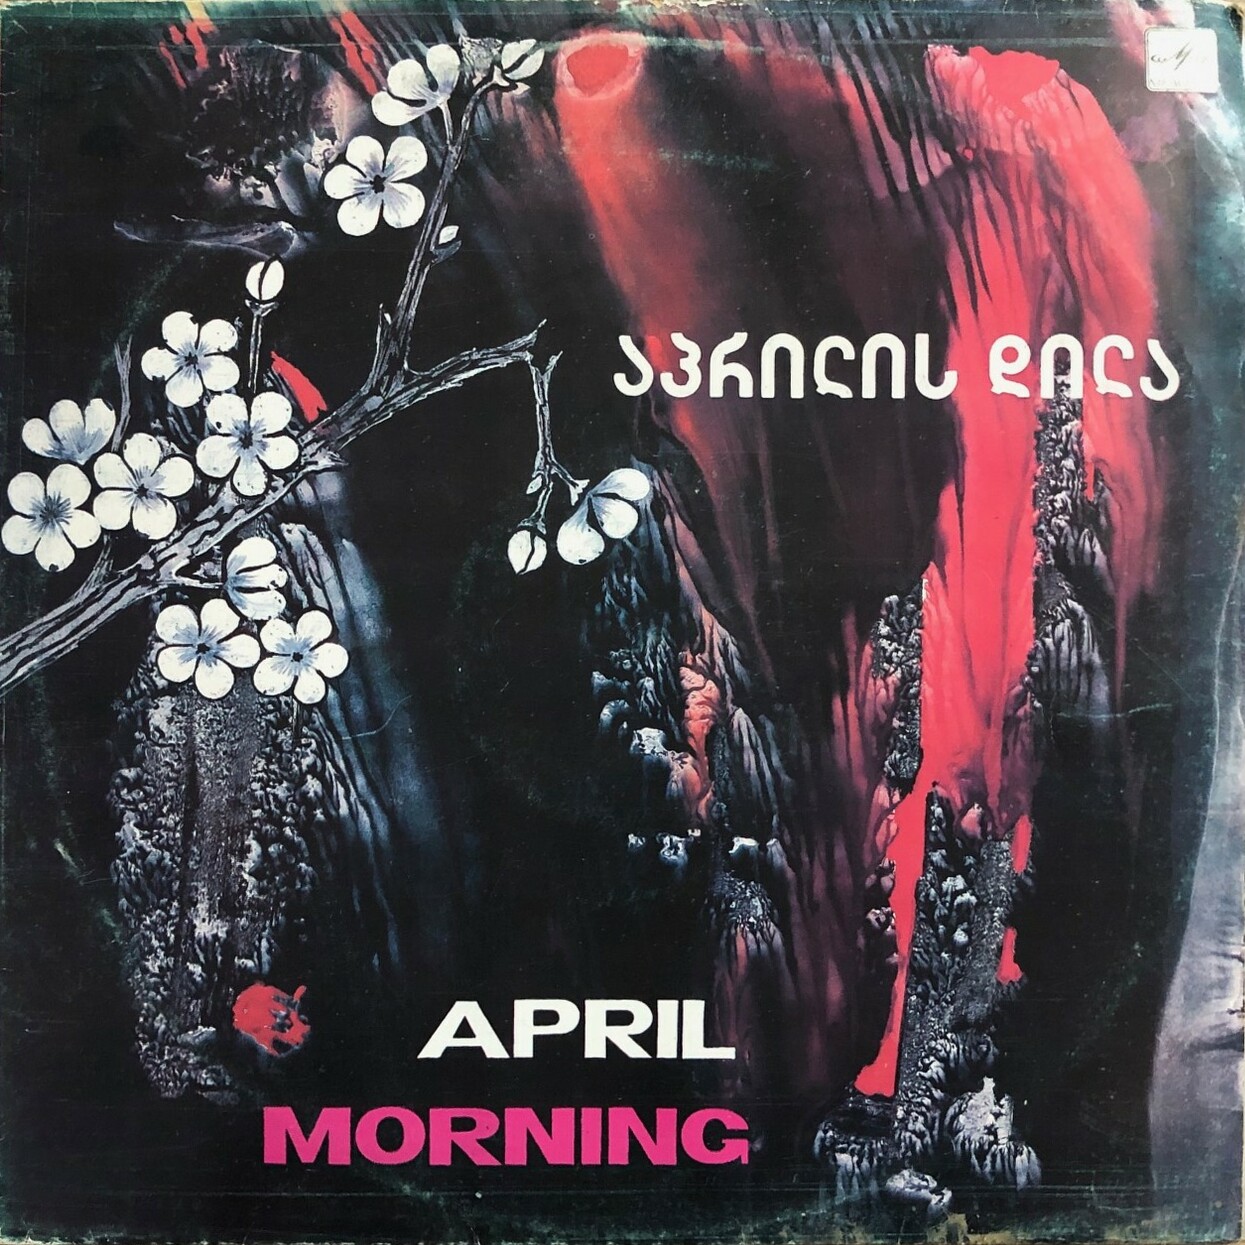 APRIL MORNING (на грузинском языке)